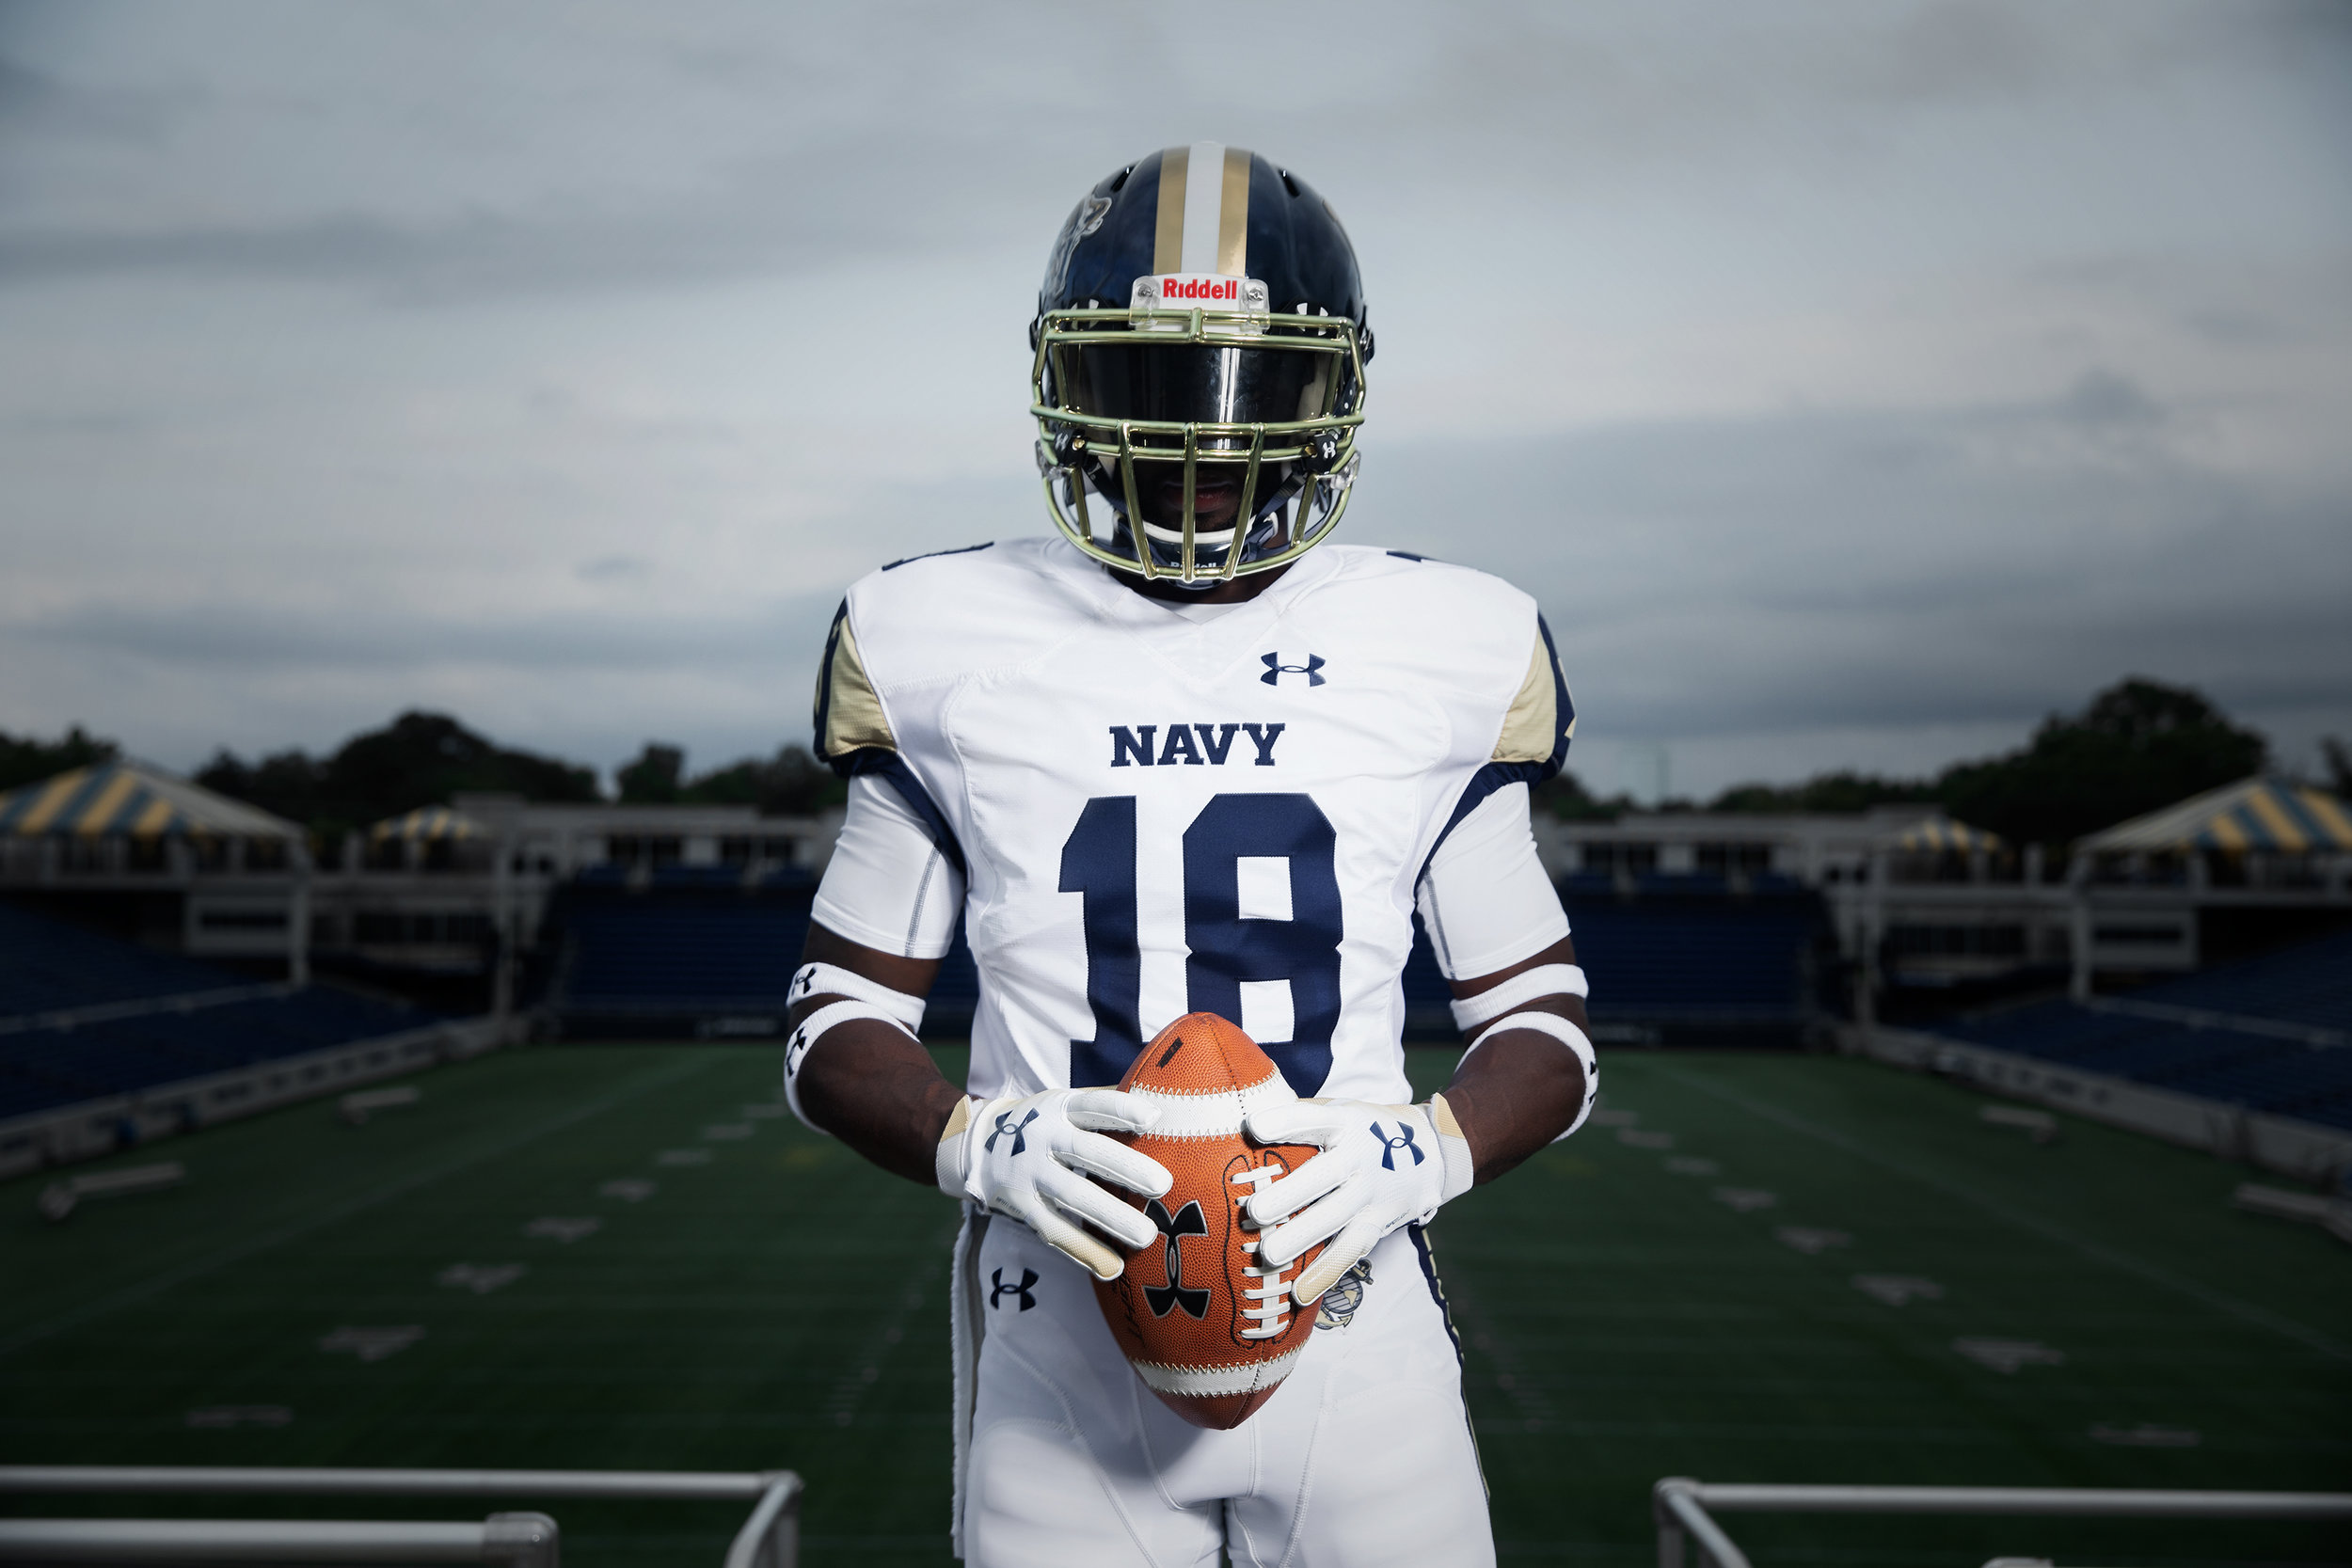 army navy jerseys 2019